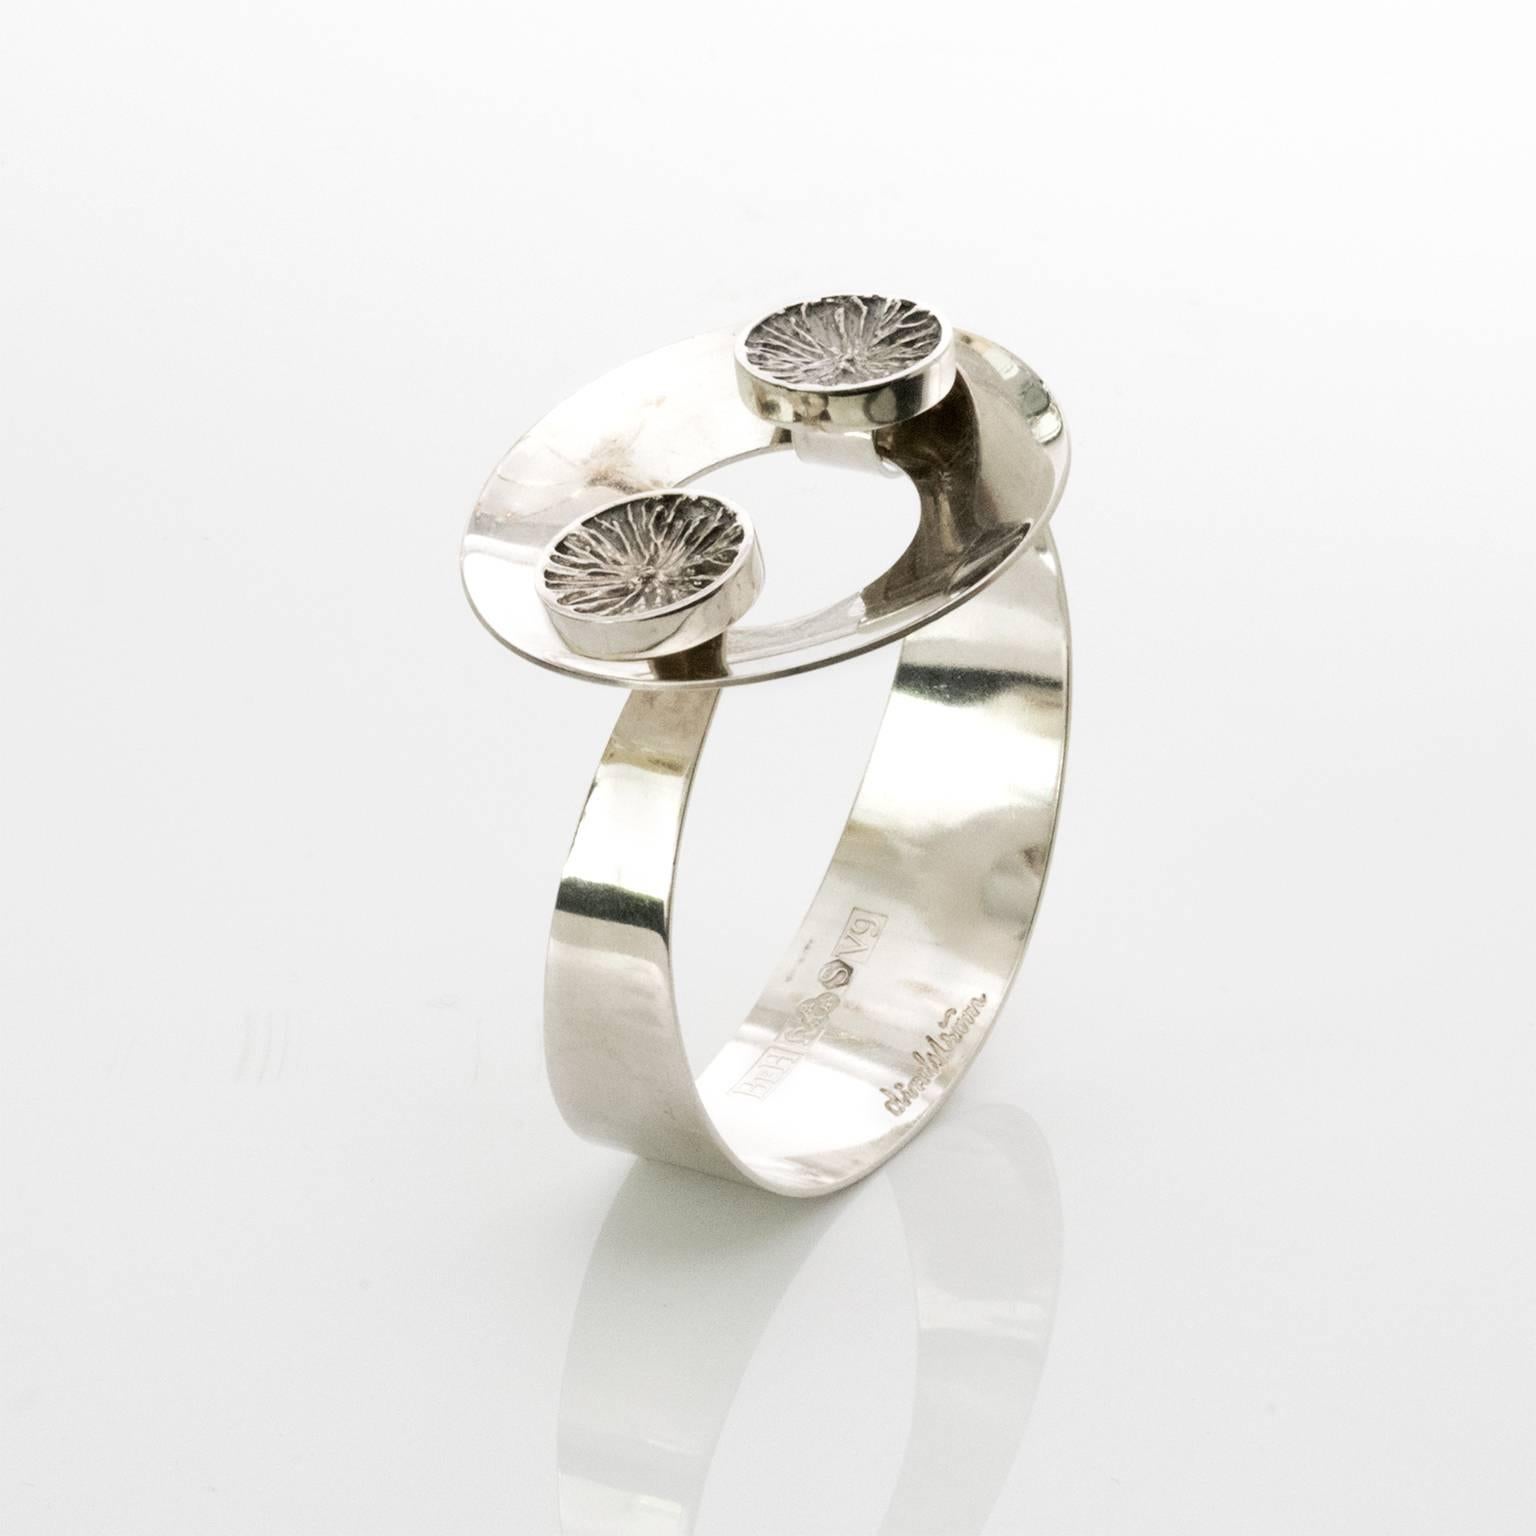 Scandinavian modern silver bracelet with disk closure clasp. Designed by Åke Lindström for Bengt Hallberg, 1971, Sweden.
Measures: Width: 2.5